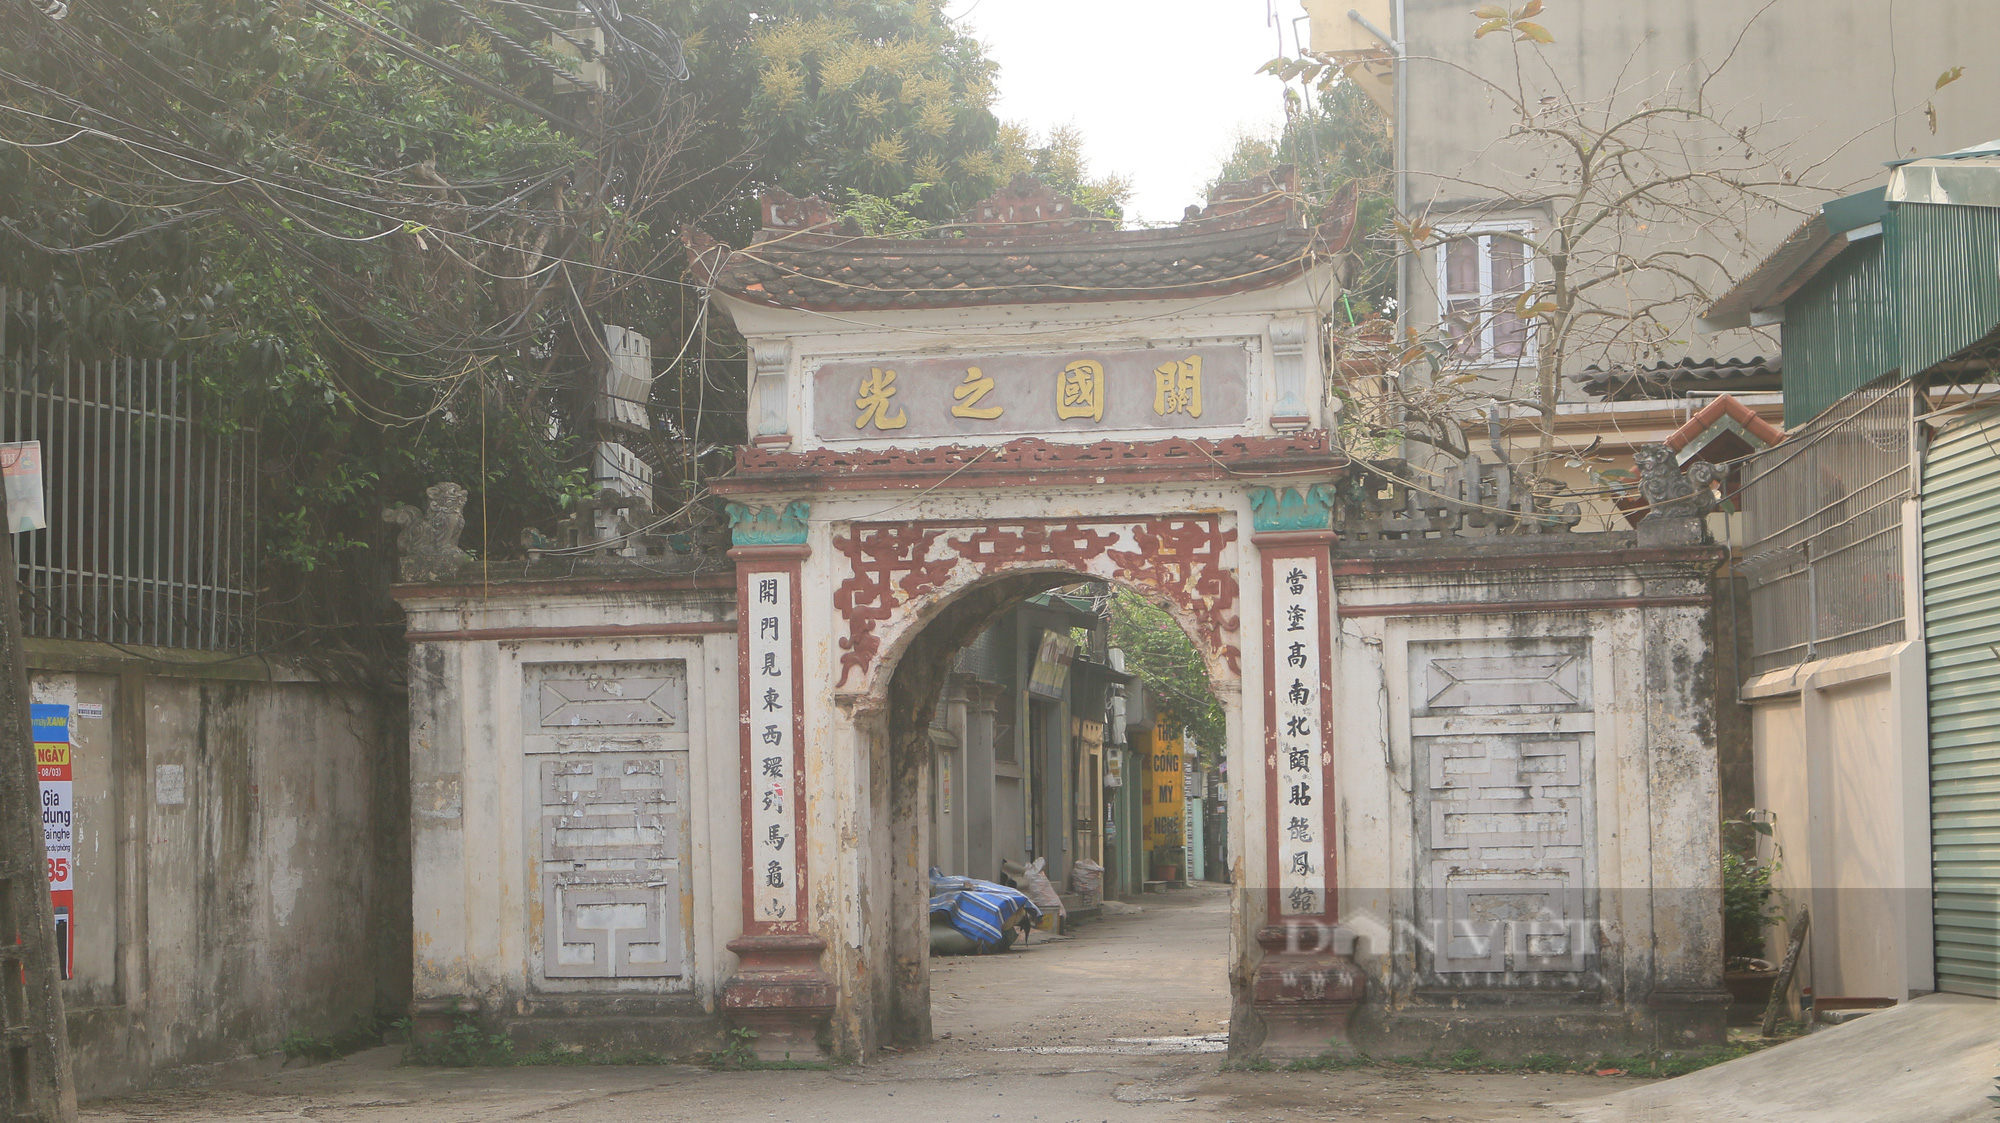 Chuyện ở làng có ngôi mộ tóc, móng chân, móng tay của anh hùng dân tộc Nguyễn Trãi - Ảnh 3.